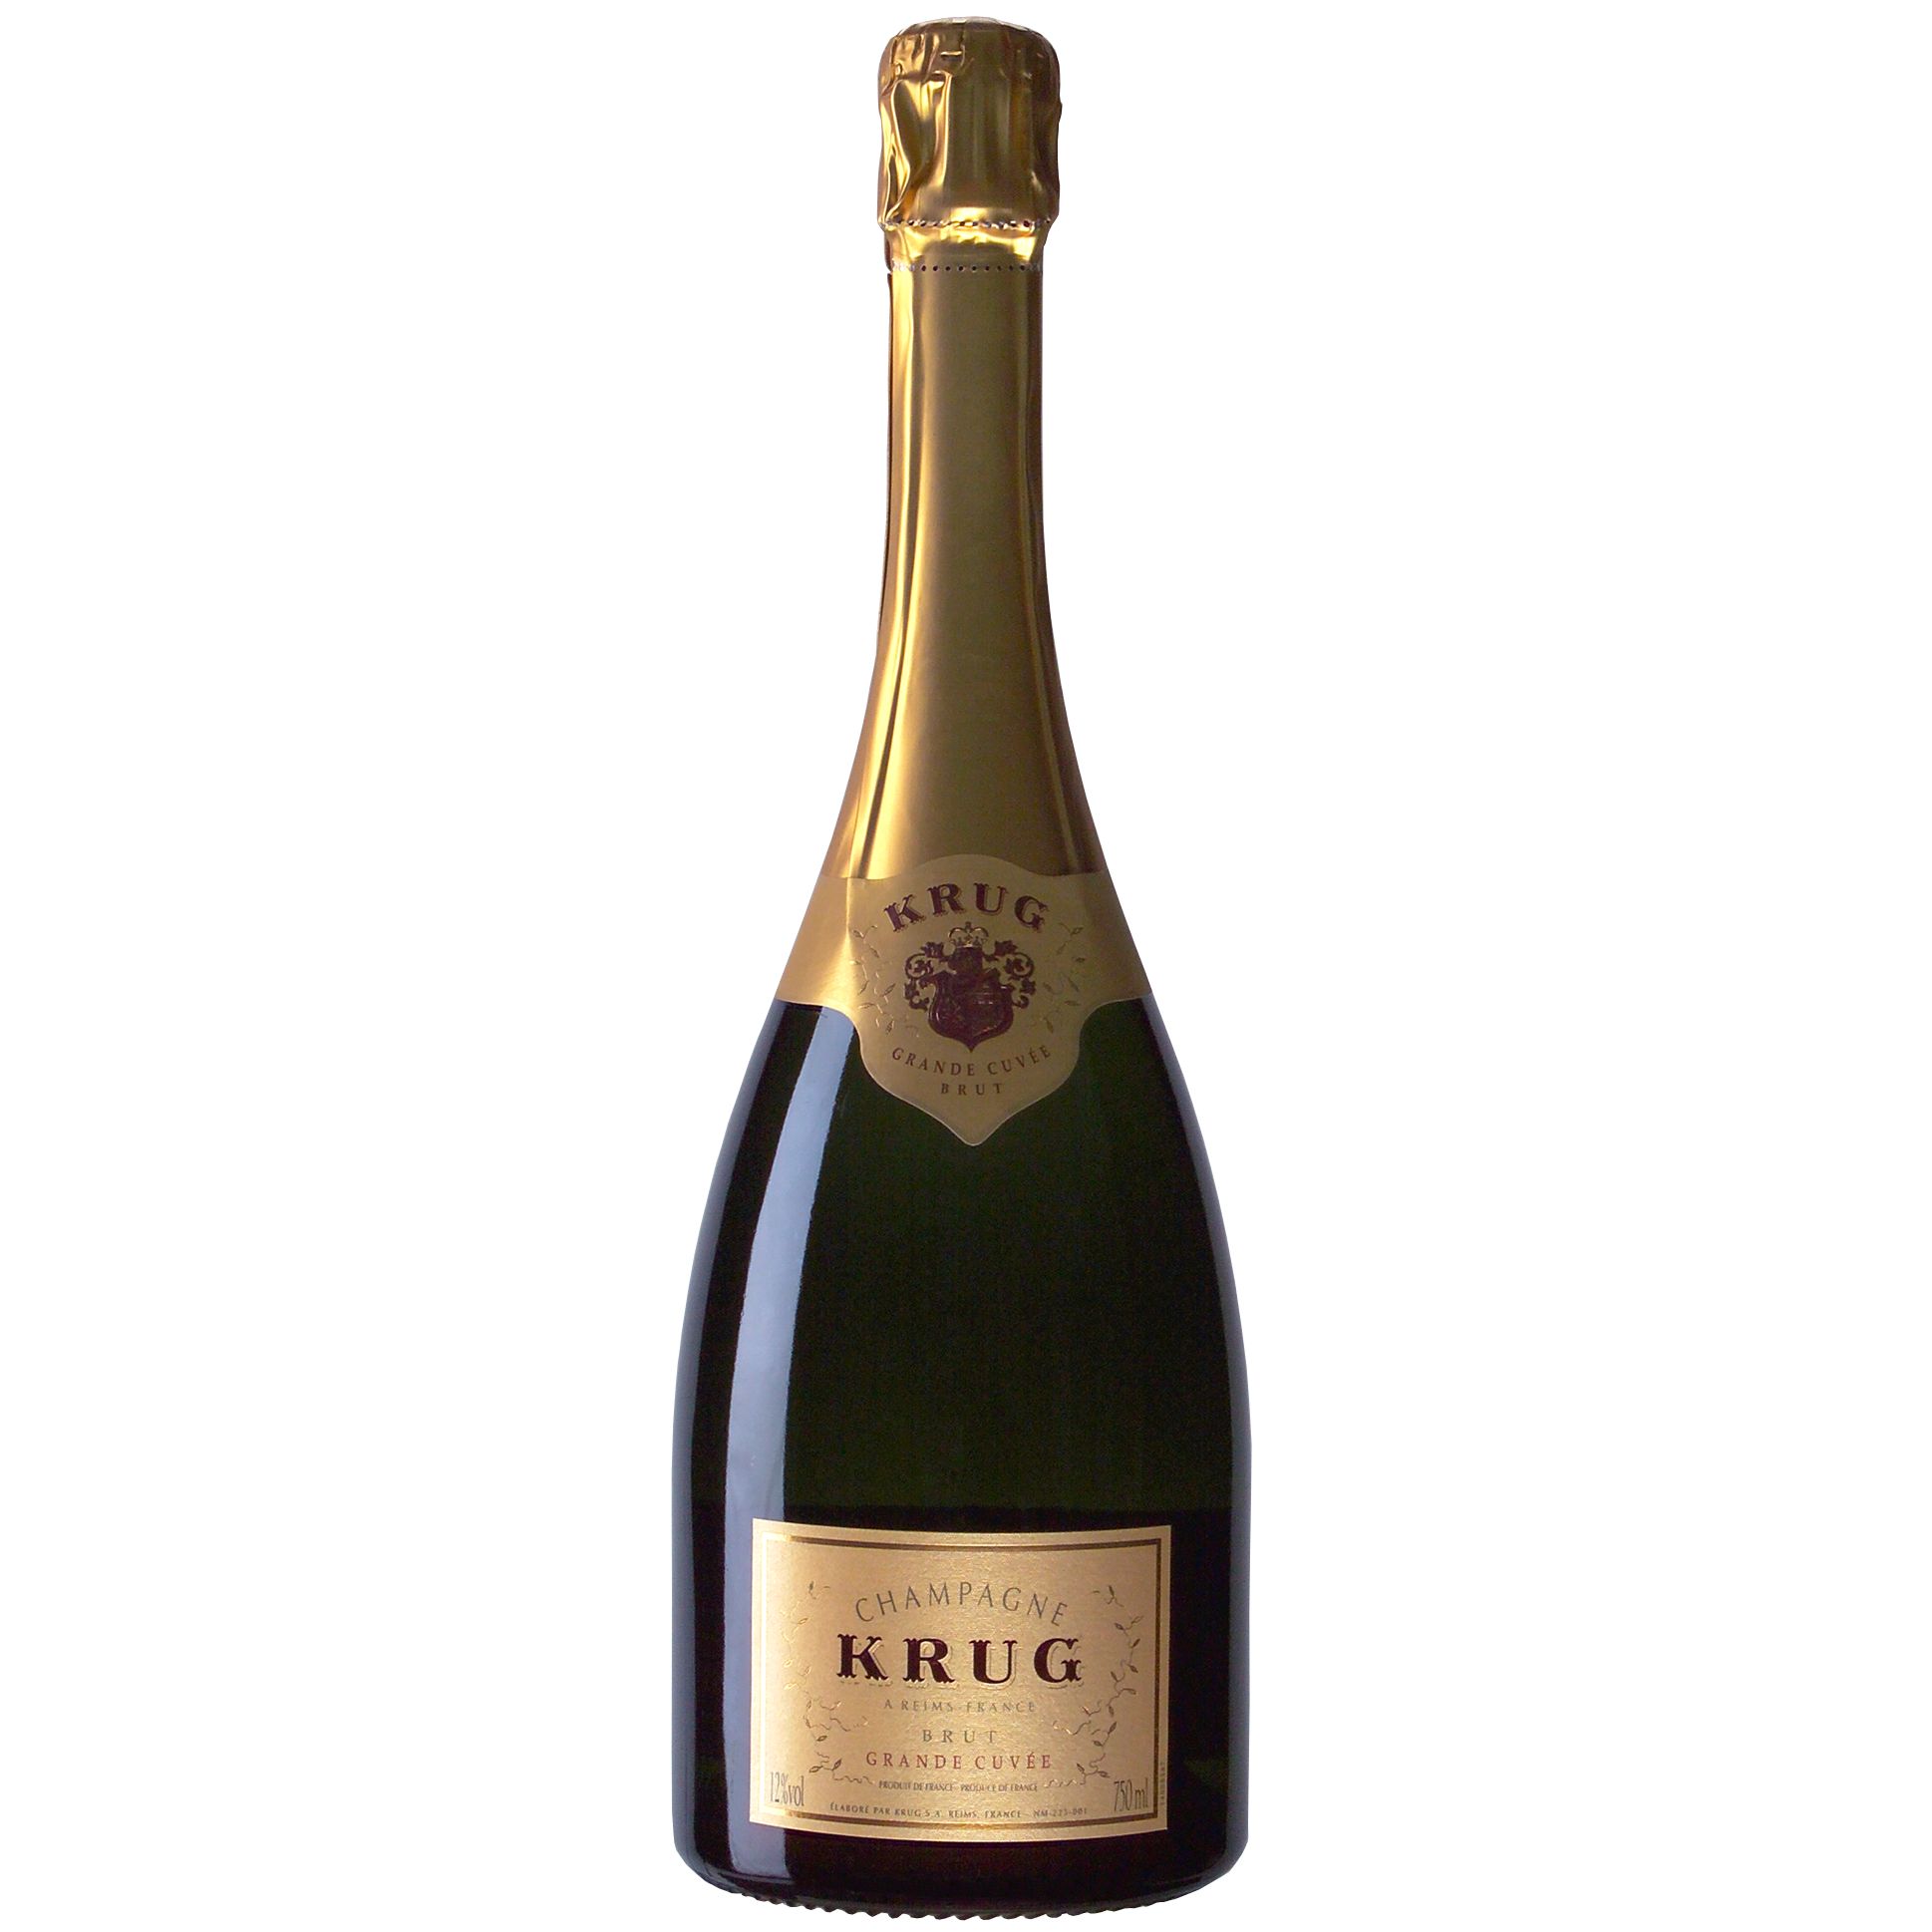 Krug Grande Cuvée NV Champagne, France at John Lewis